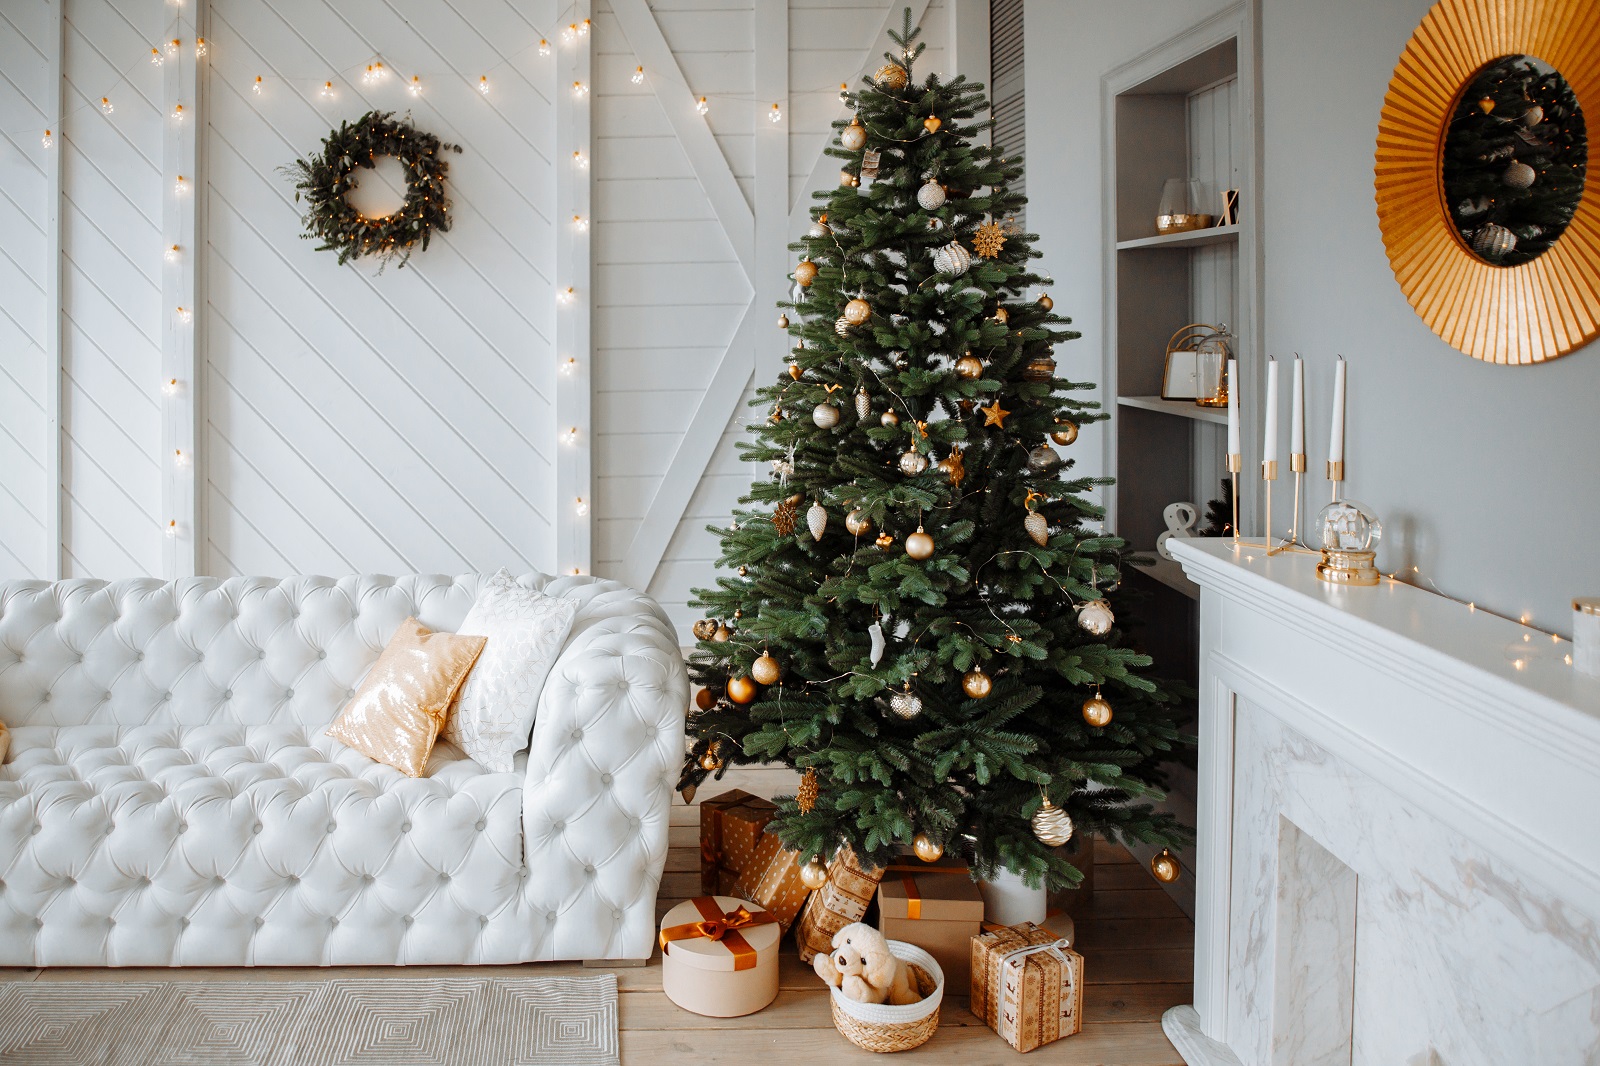 Décorez un sapin pour créer une ambiance festive de Noël.&nbsp;© Мария Балчугова, Adobe Stock